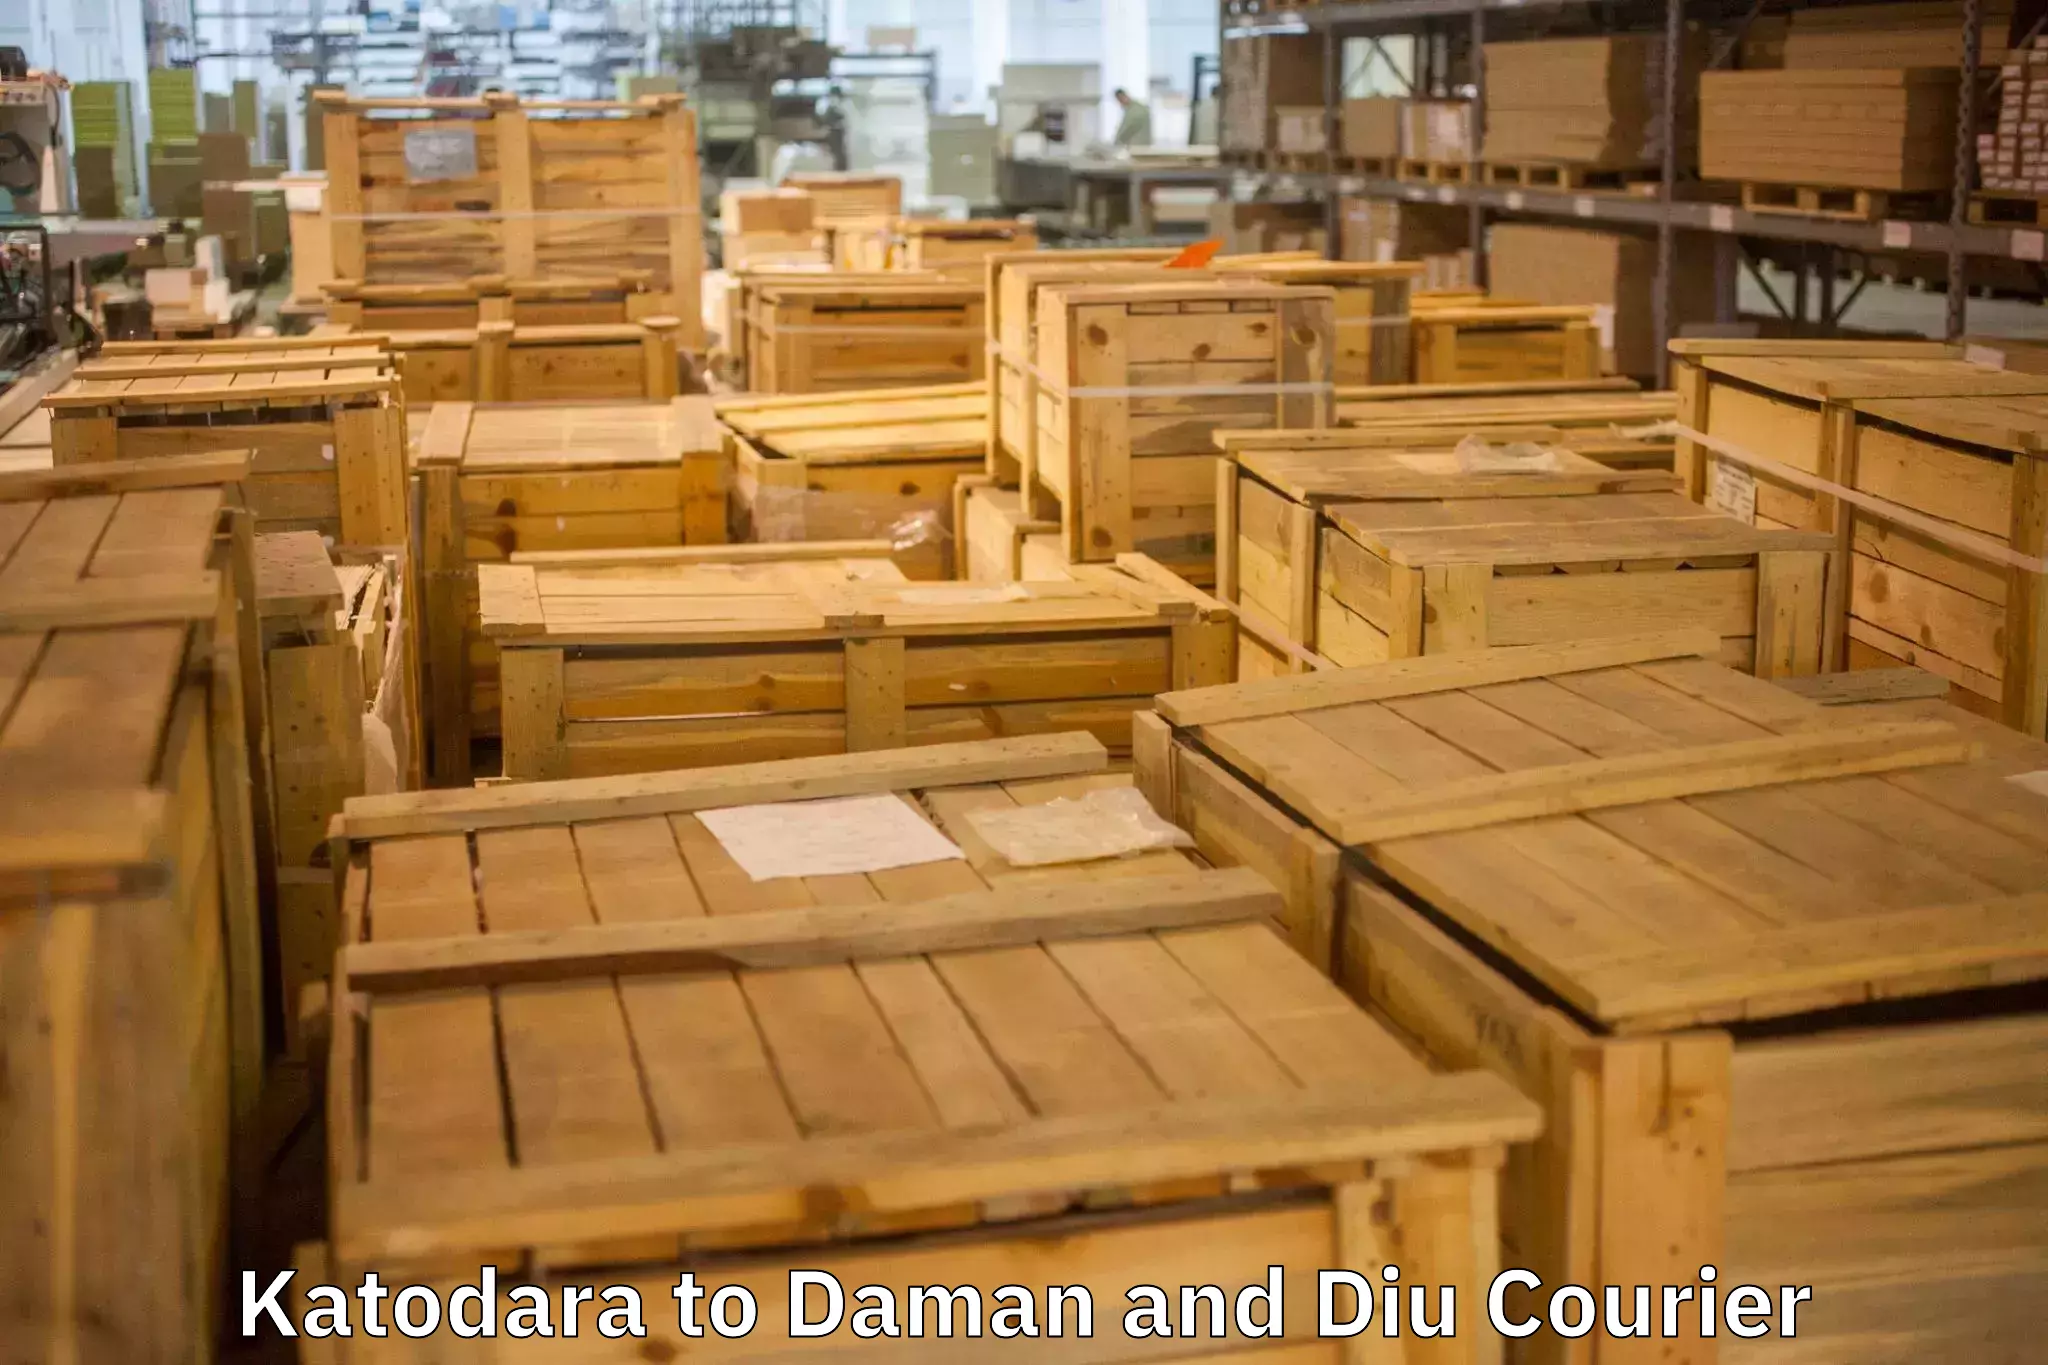 Reliable moving assistance Katodara to Daman and Diu